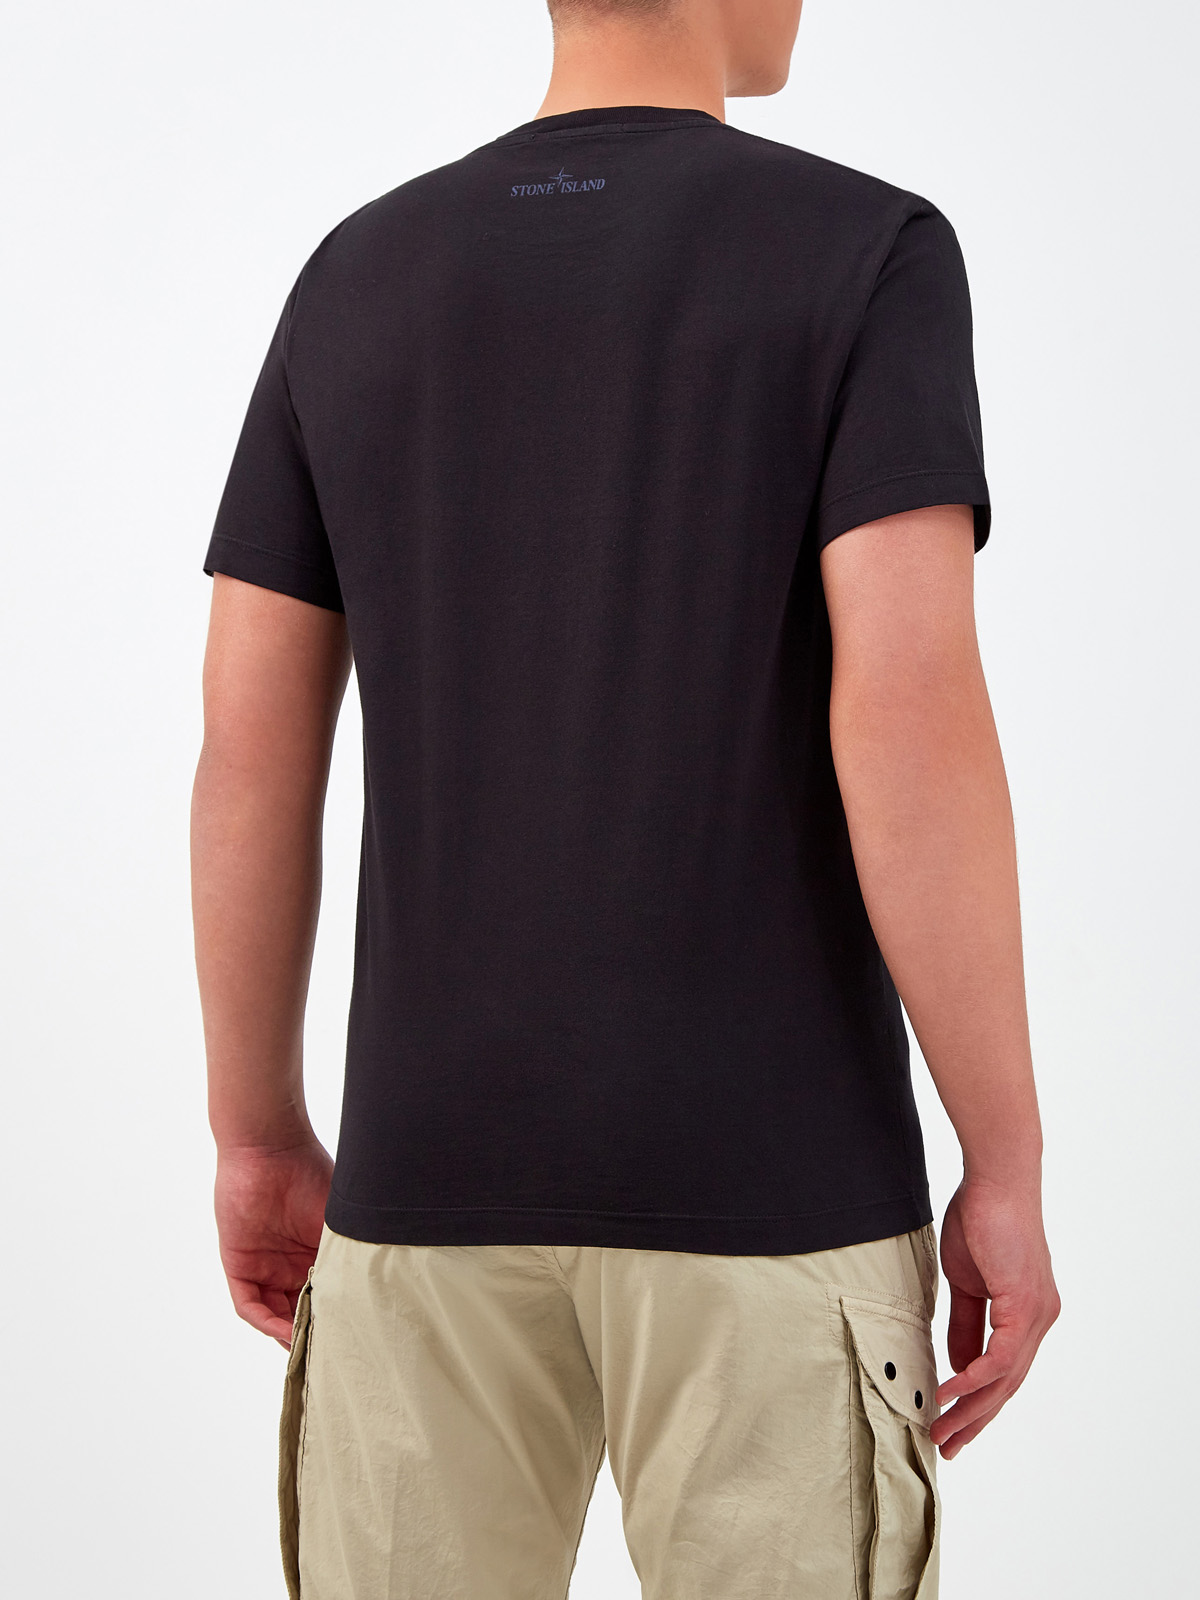 Хлопковая футболка из джерси с центрированным принтом STONE ISLAND, цвет черный, размер M;L;XL;2XL;3XL - фото 4